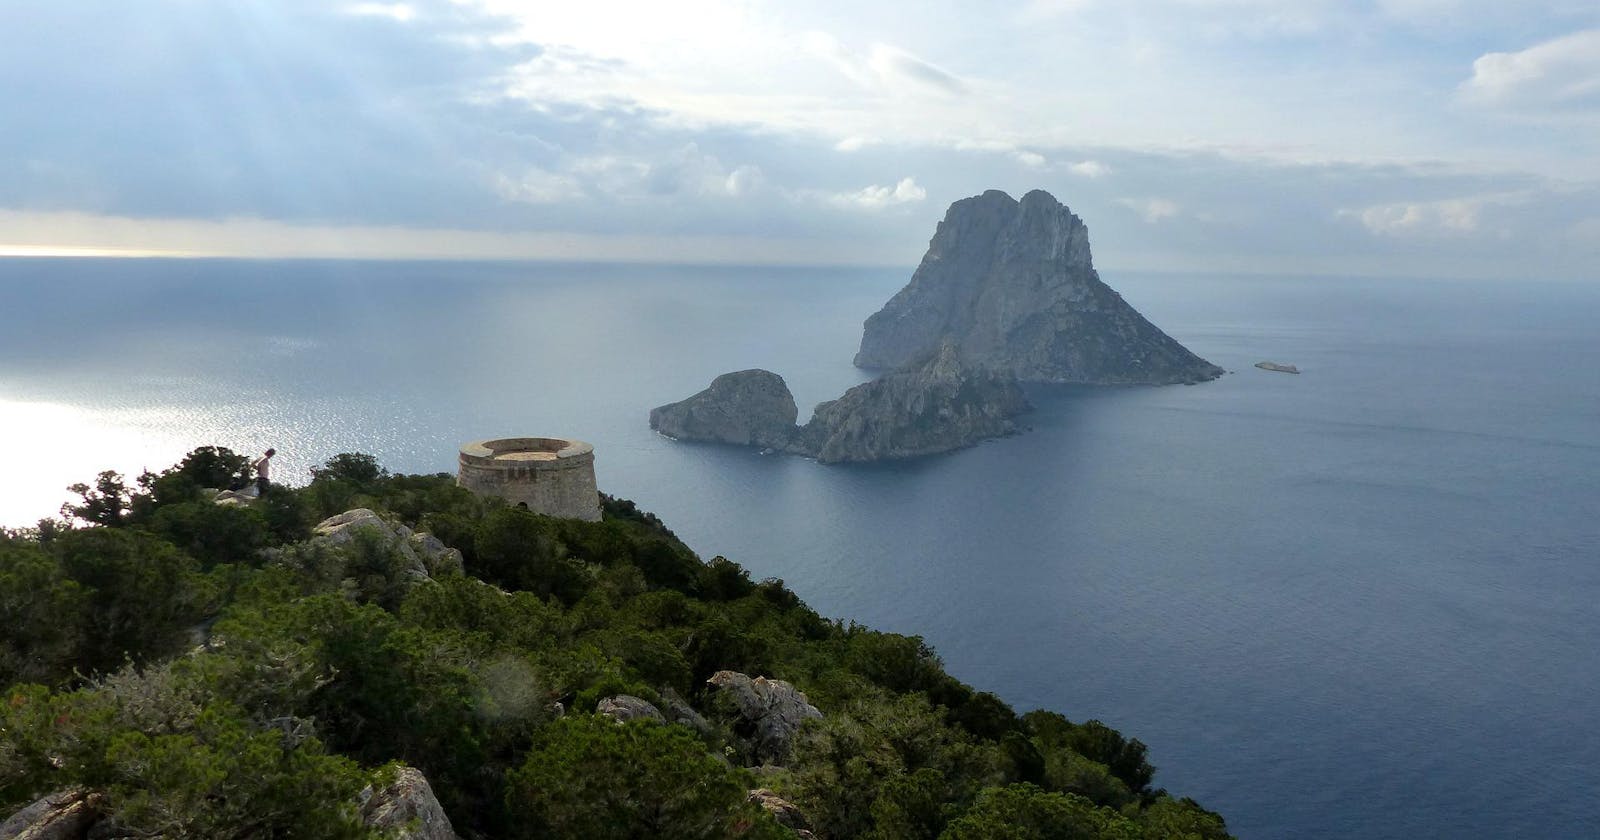 10 ways to incentivize Ibiza's sustainability through web3